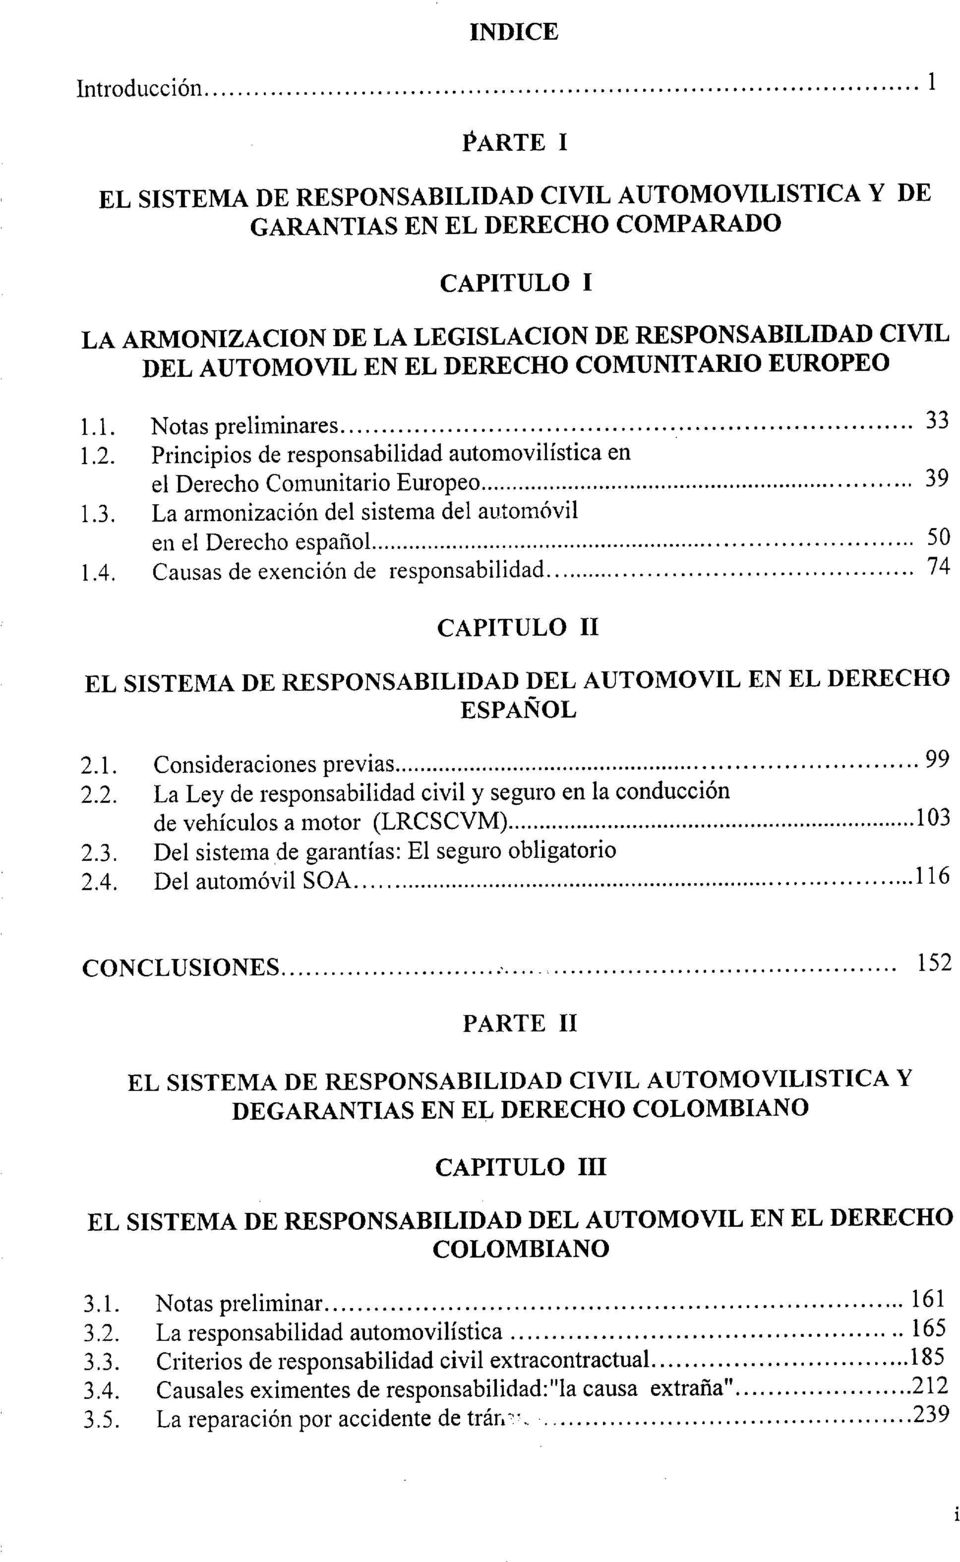 COMUNITARIO EUROPEO 1.1. Notas preliminares33 1.2. Principios de responsabilidad automovilística en el Derecho Comunitario Europeo39 1.3. La armonización del sistema del automóvil en el Derecho español50 1.